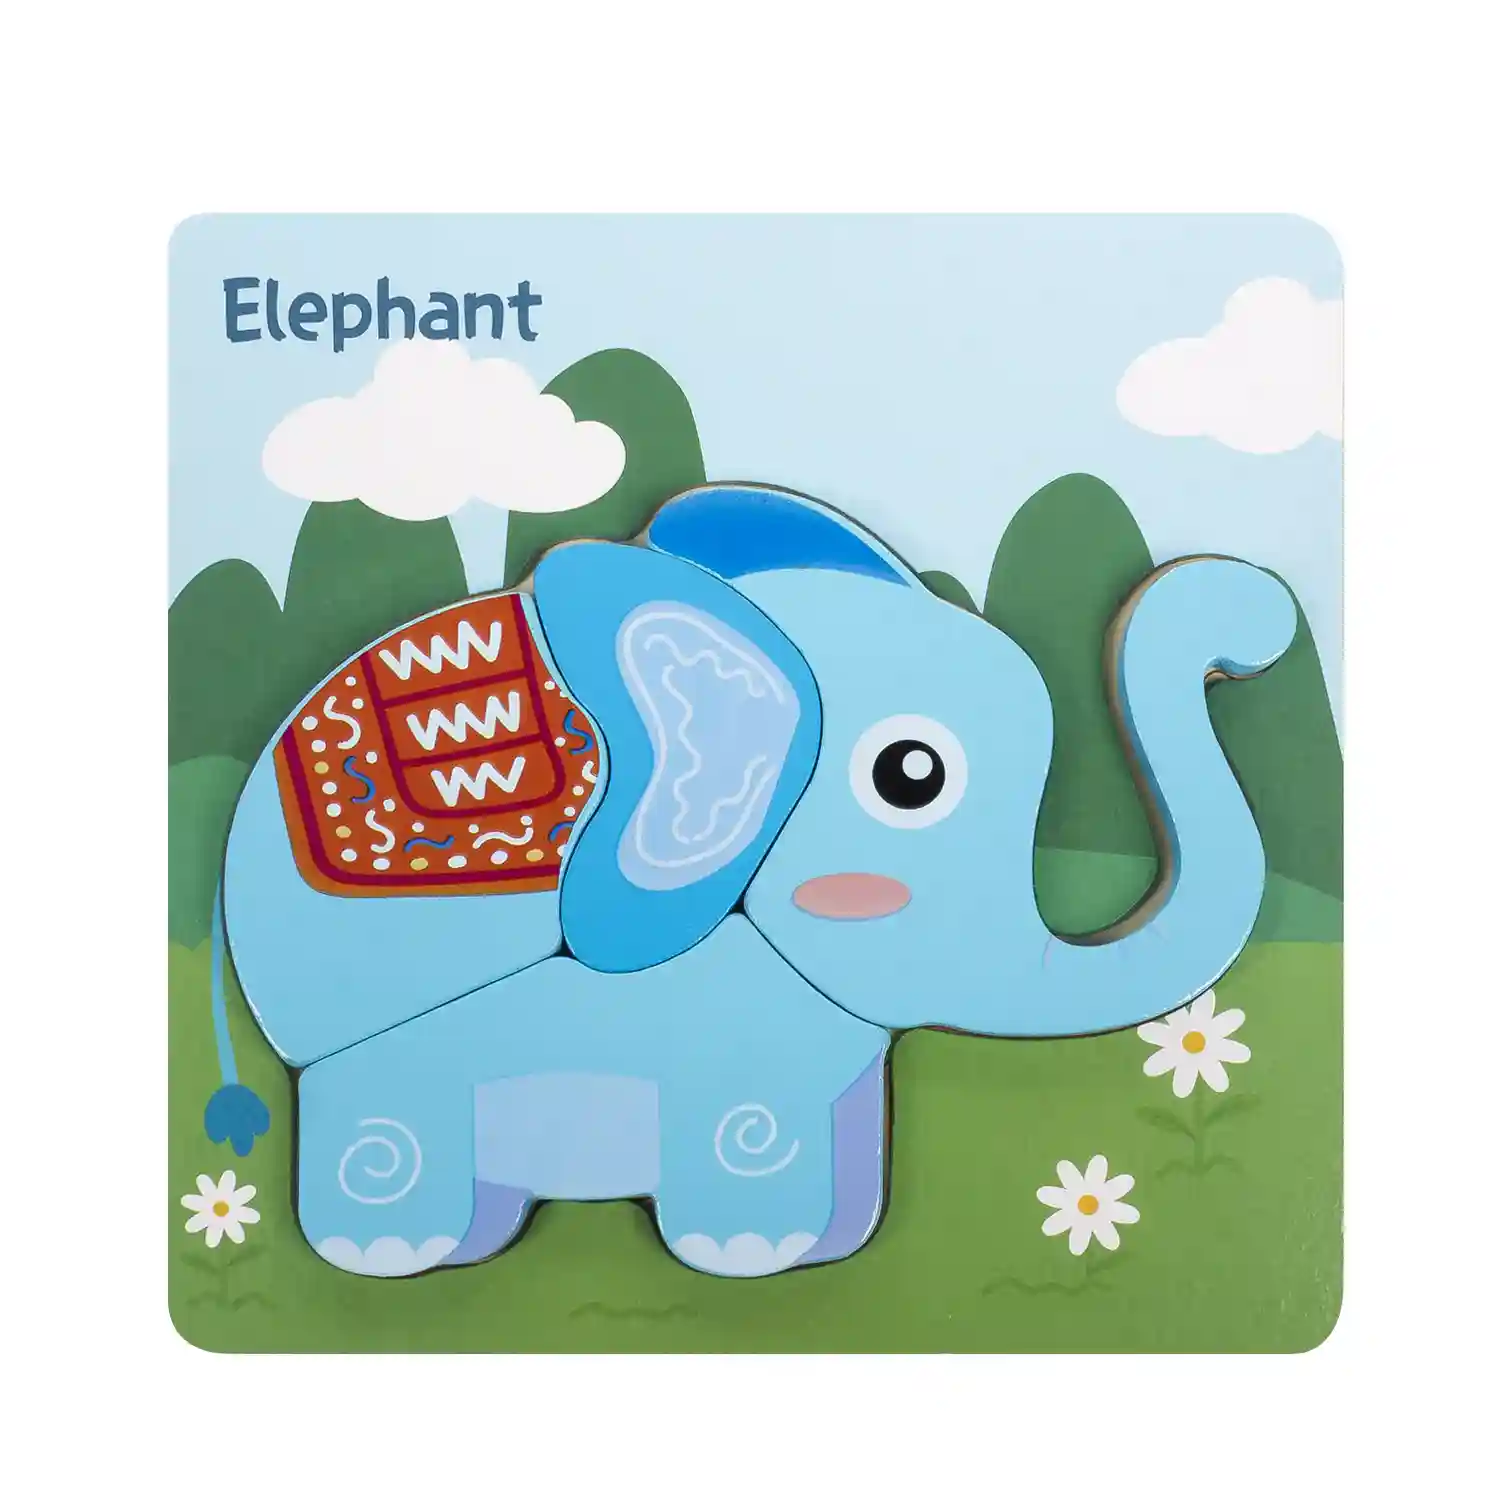 Puzle de madera para niños, 4 piezas. Diseño elefante.